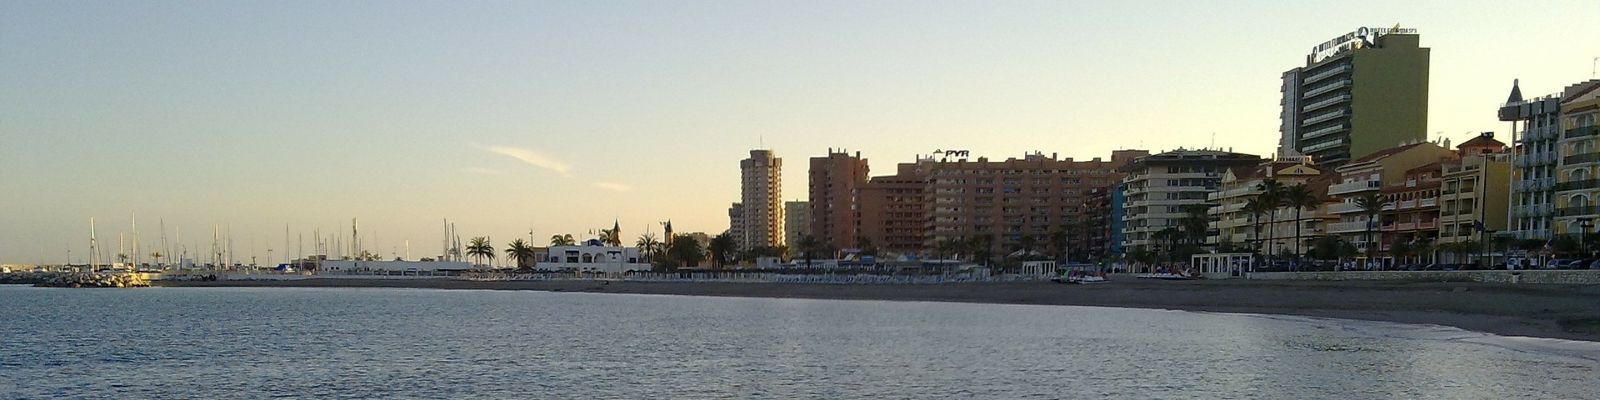 Oferta vacaciones en Fuengirola con cancelación gratis hasta 3 días antes (Fuengirola - MALAGA)